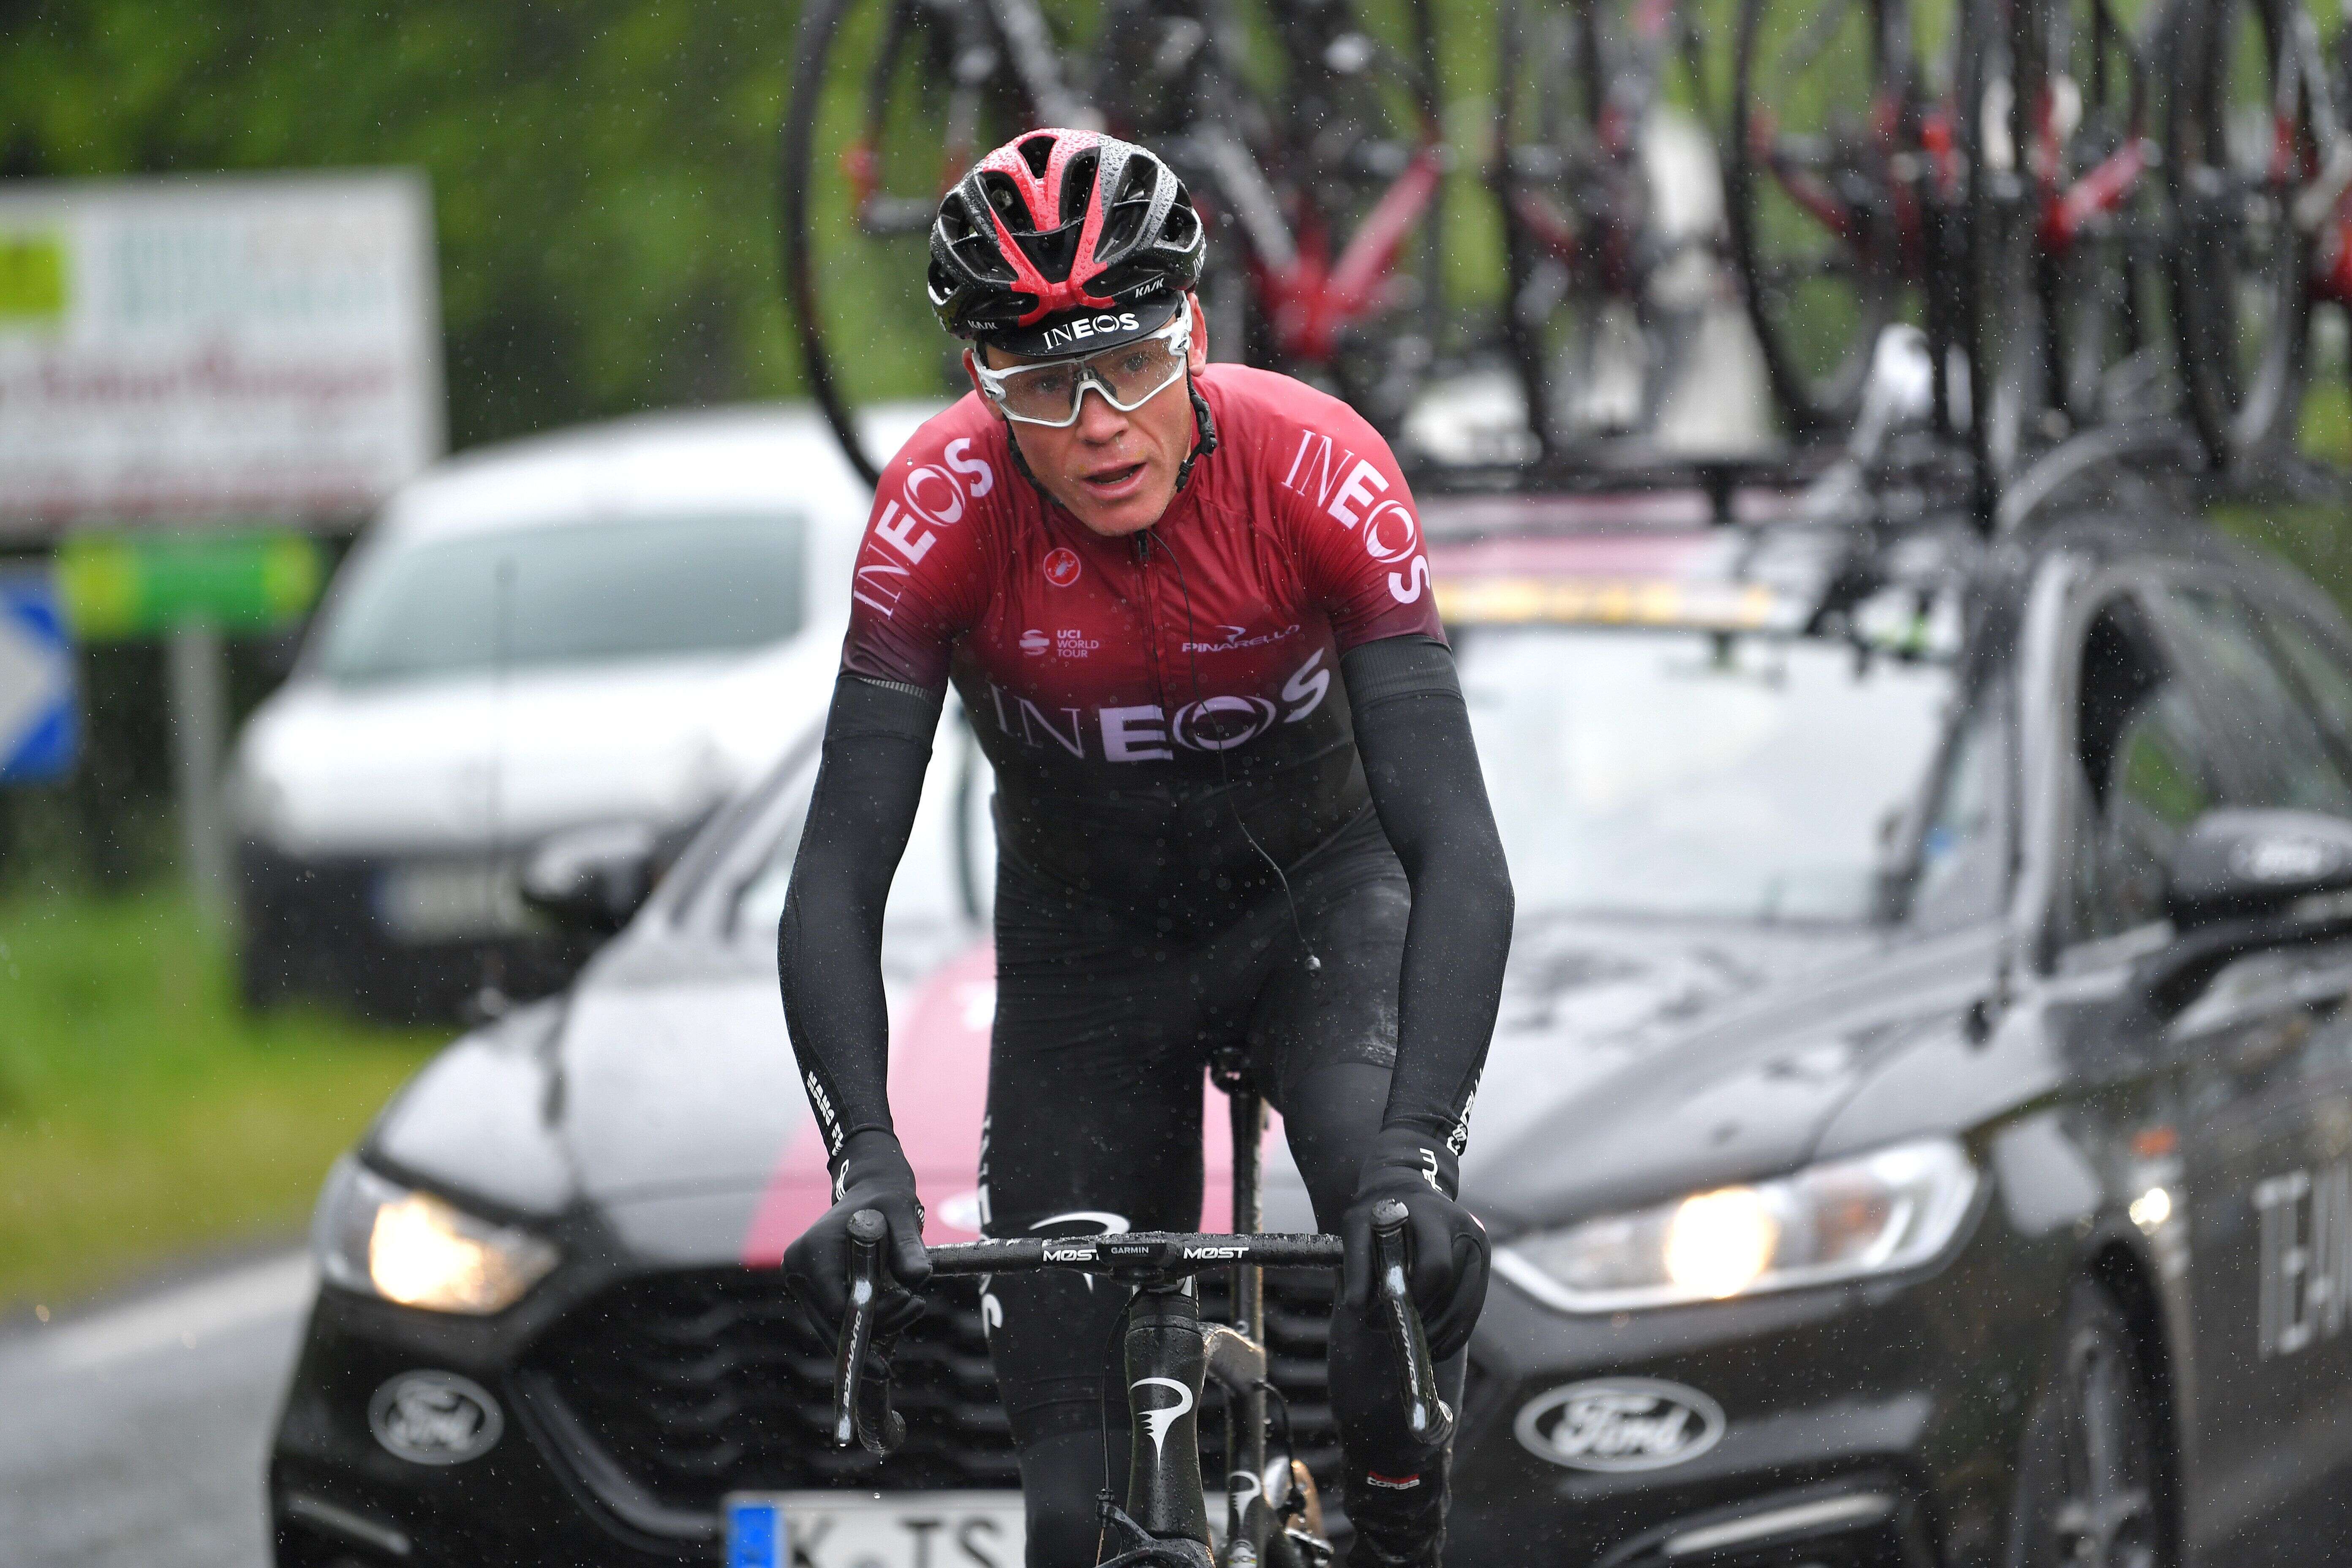 C'est sur les routes du Critérium du Dauphiné, où il lançait la phase finale de sa préparation en vue du Tour de France, que Chris Froome a lourdement chuté ce mercredi 12 juin.